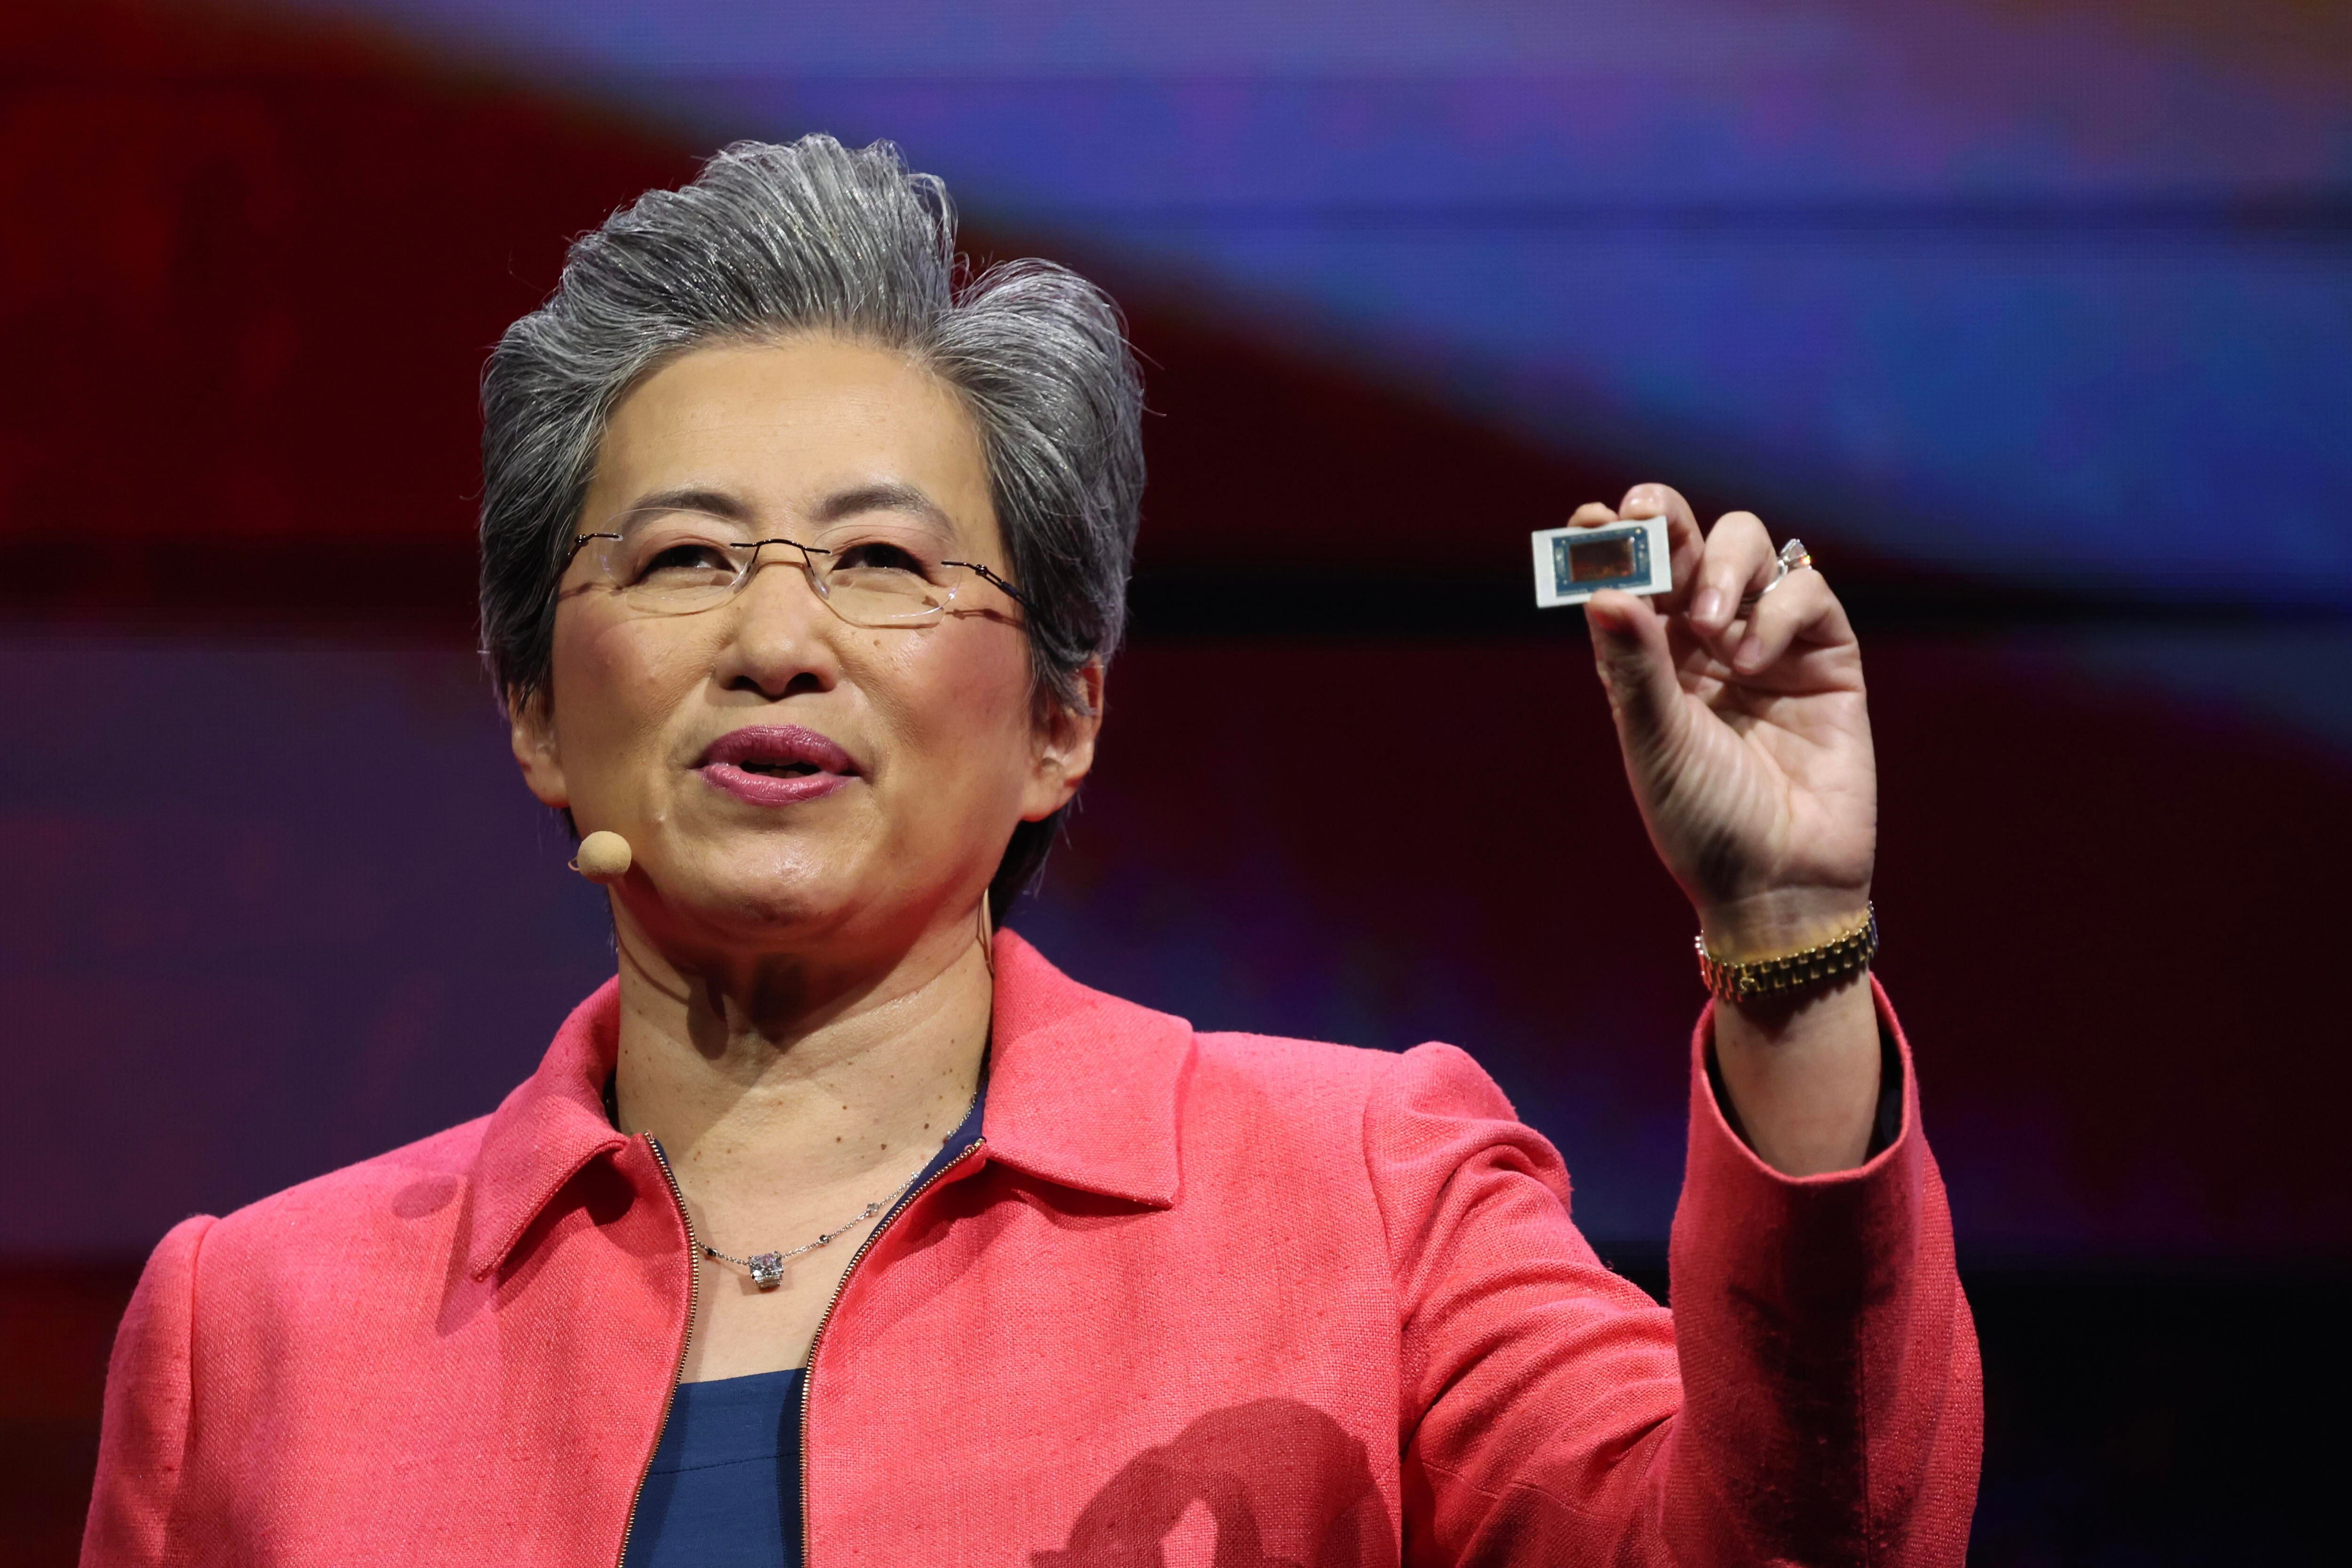 La consejera delegada de AMD, Lisa Su, muestra un procesador Ryzen AI 300 durante su presentación en el Computex de Taipéi.